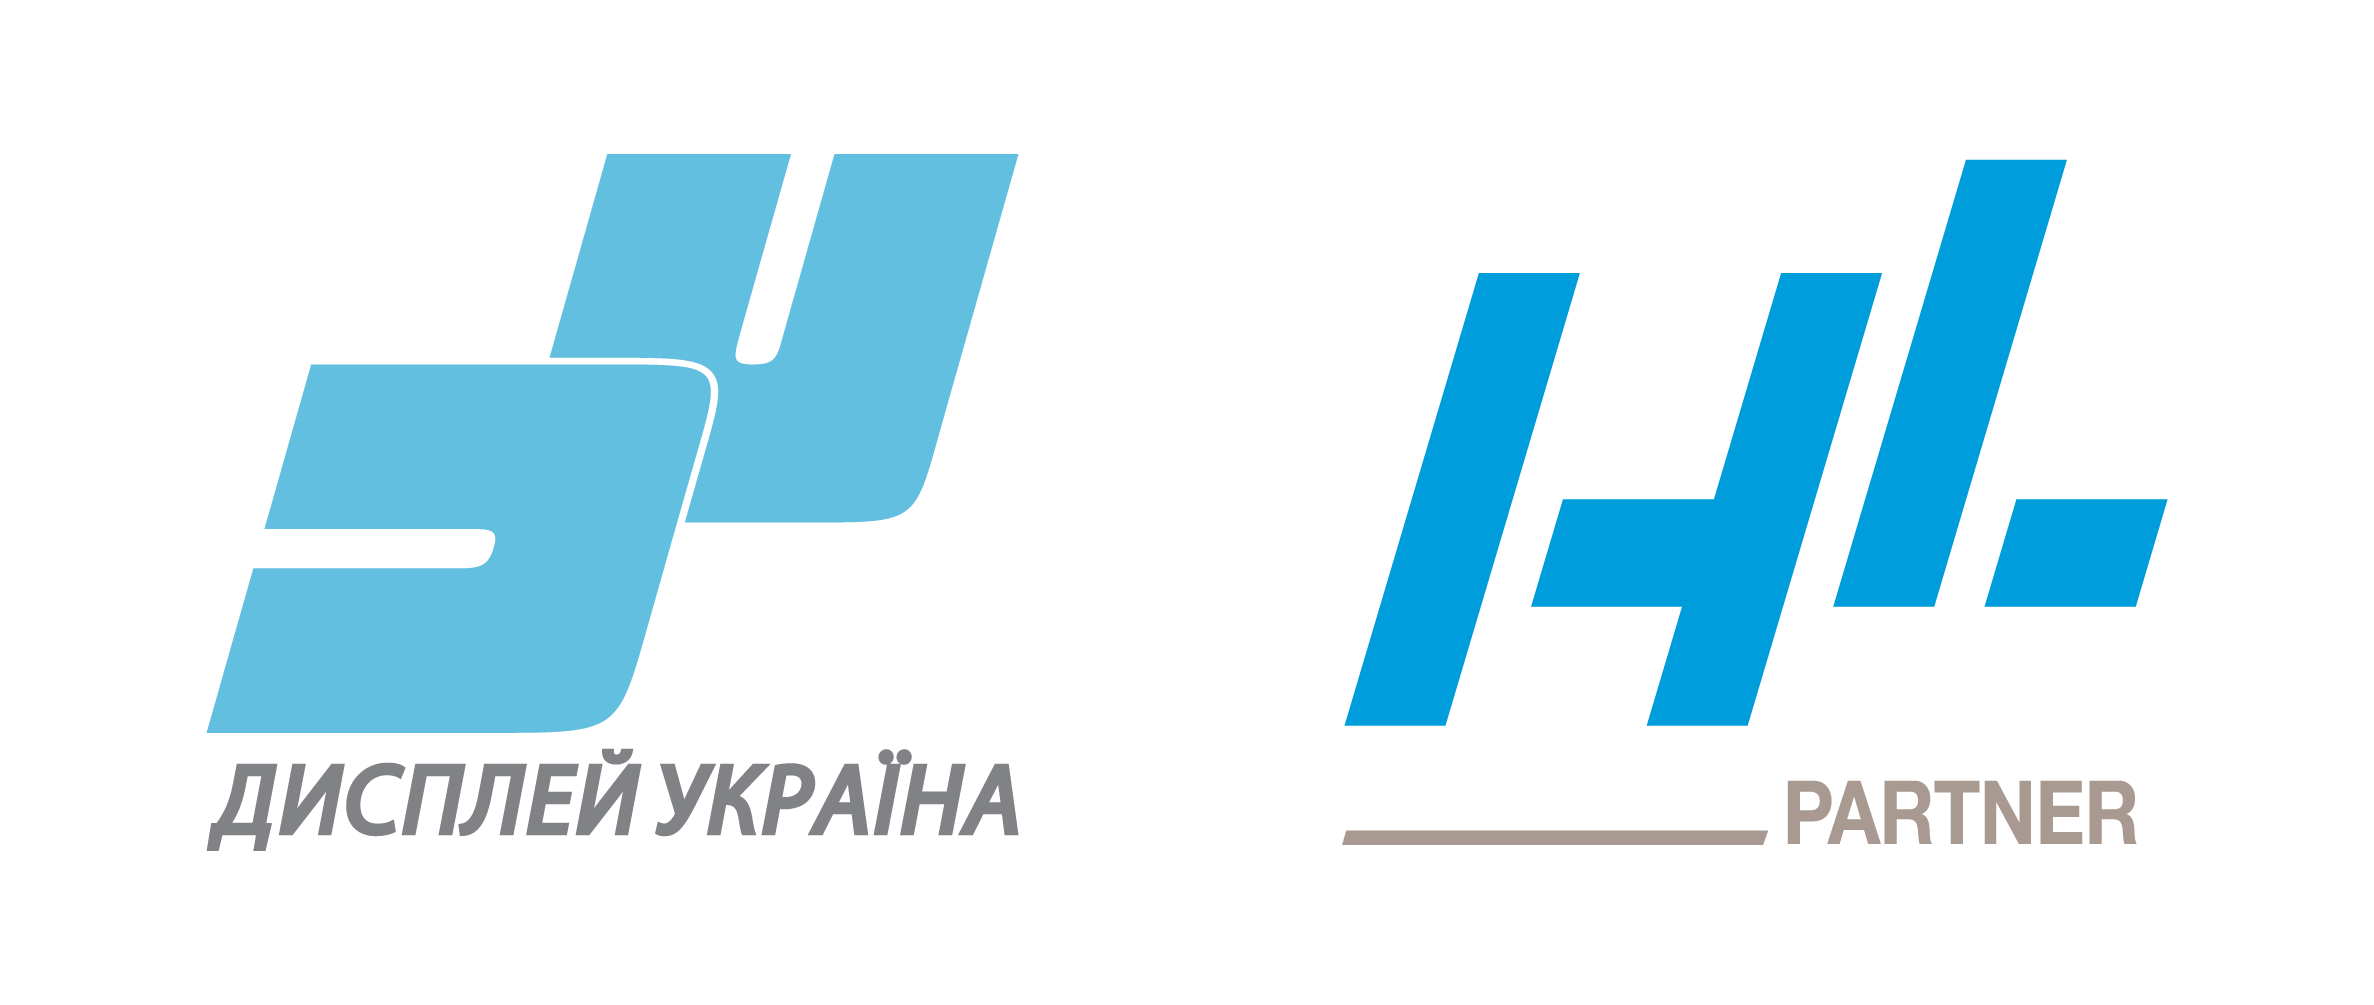 Дисплей Україна